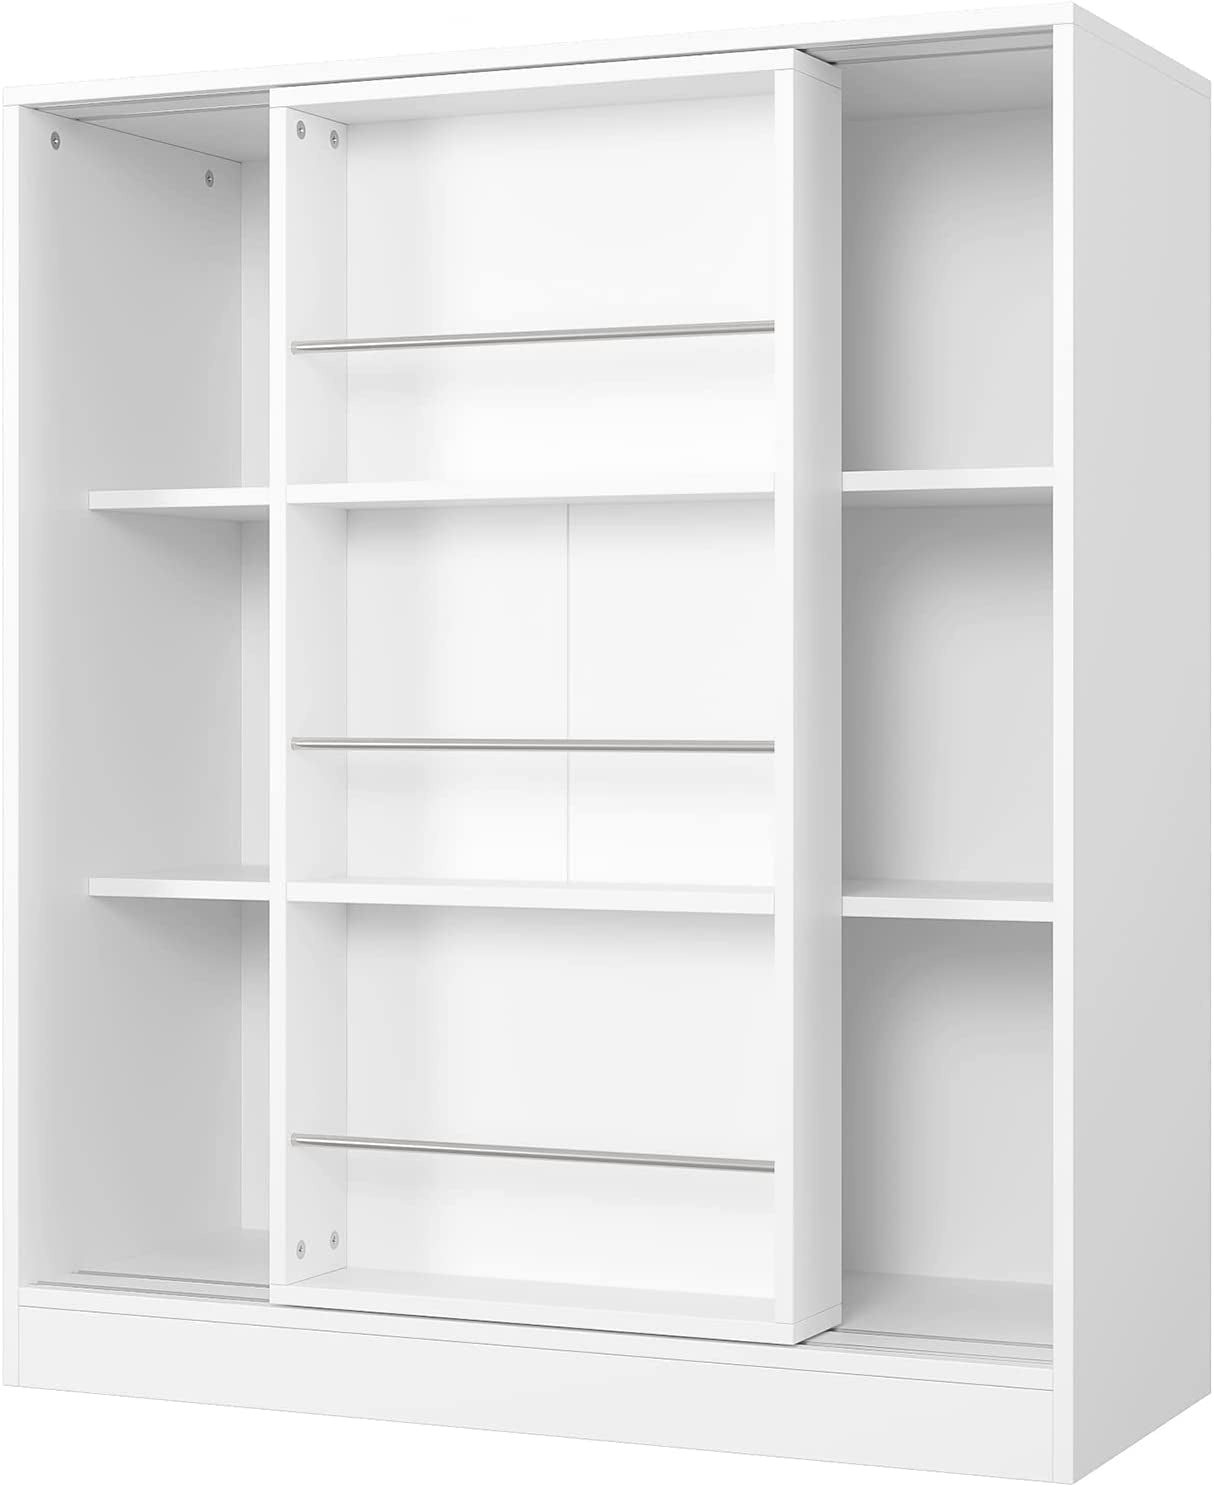 Children'S Bookcase Kid'S Shelves Toy Storage Organiser with Sliding Door Display Stand White Wooden 90X37X105Cm